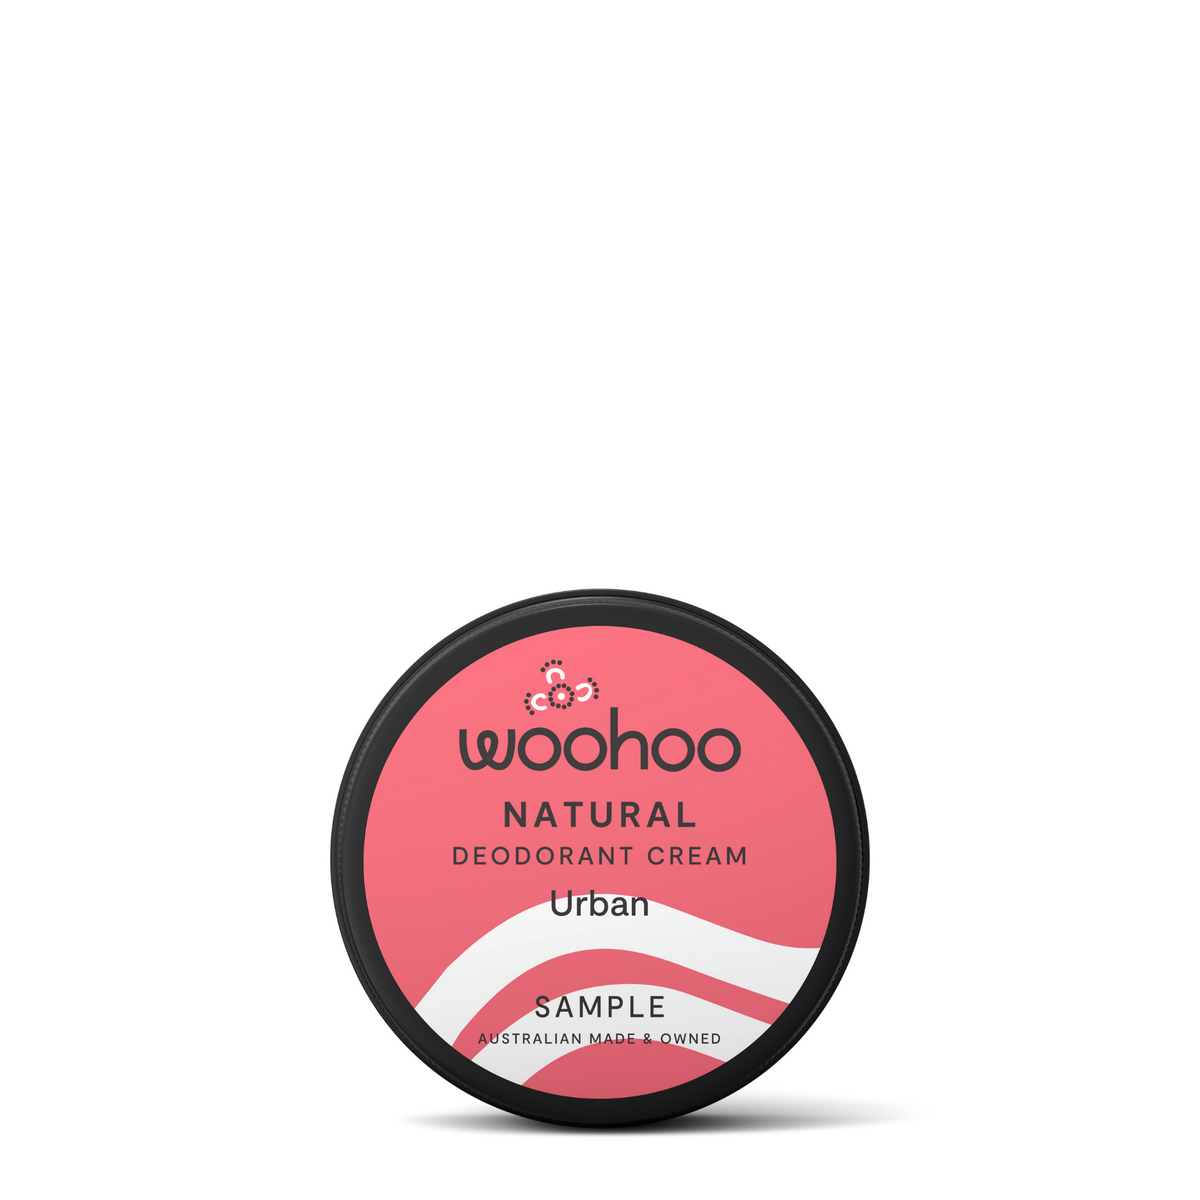 SAMPLE - Woohoo All Natural Deodorant Paste (Urban)